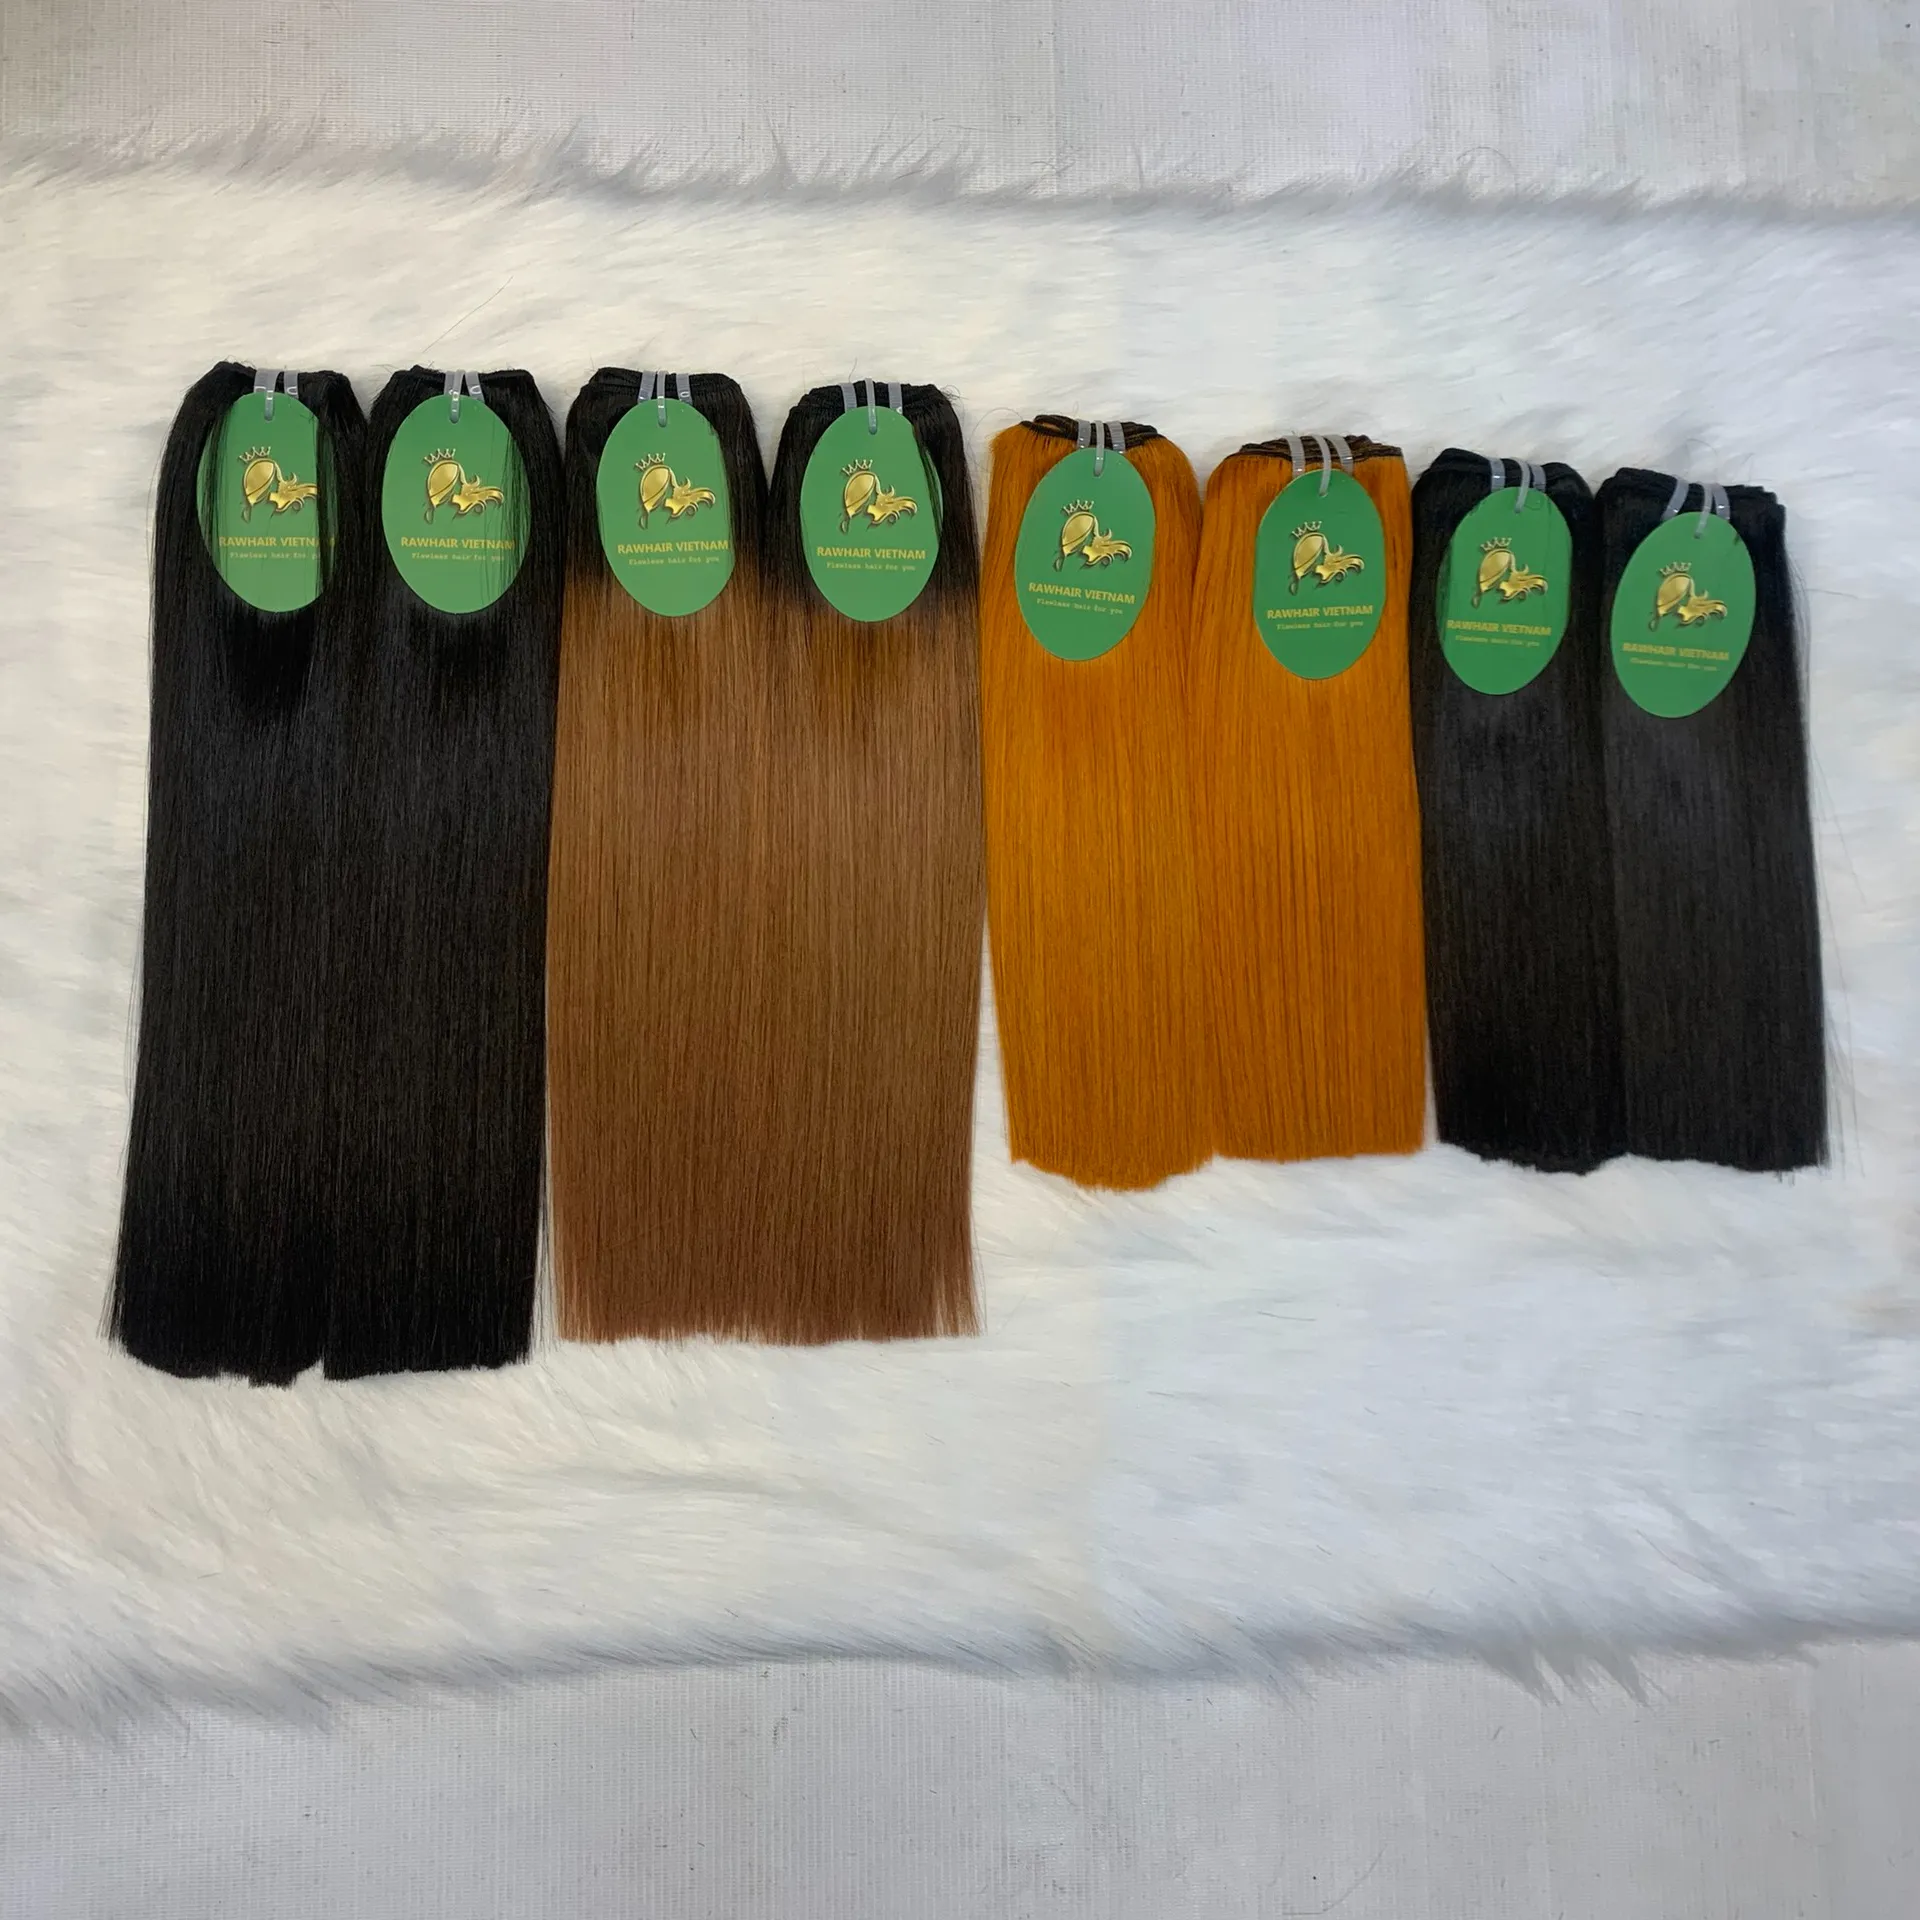 RTS nuovo ordine di vendita calda vietnamita capelli lisci capelli umani extension capelli umani capelli crudi vietnamiti